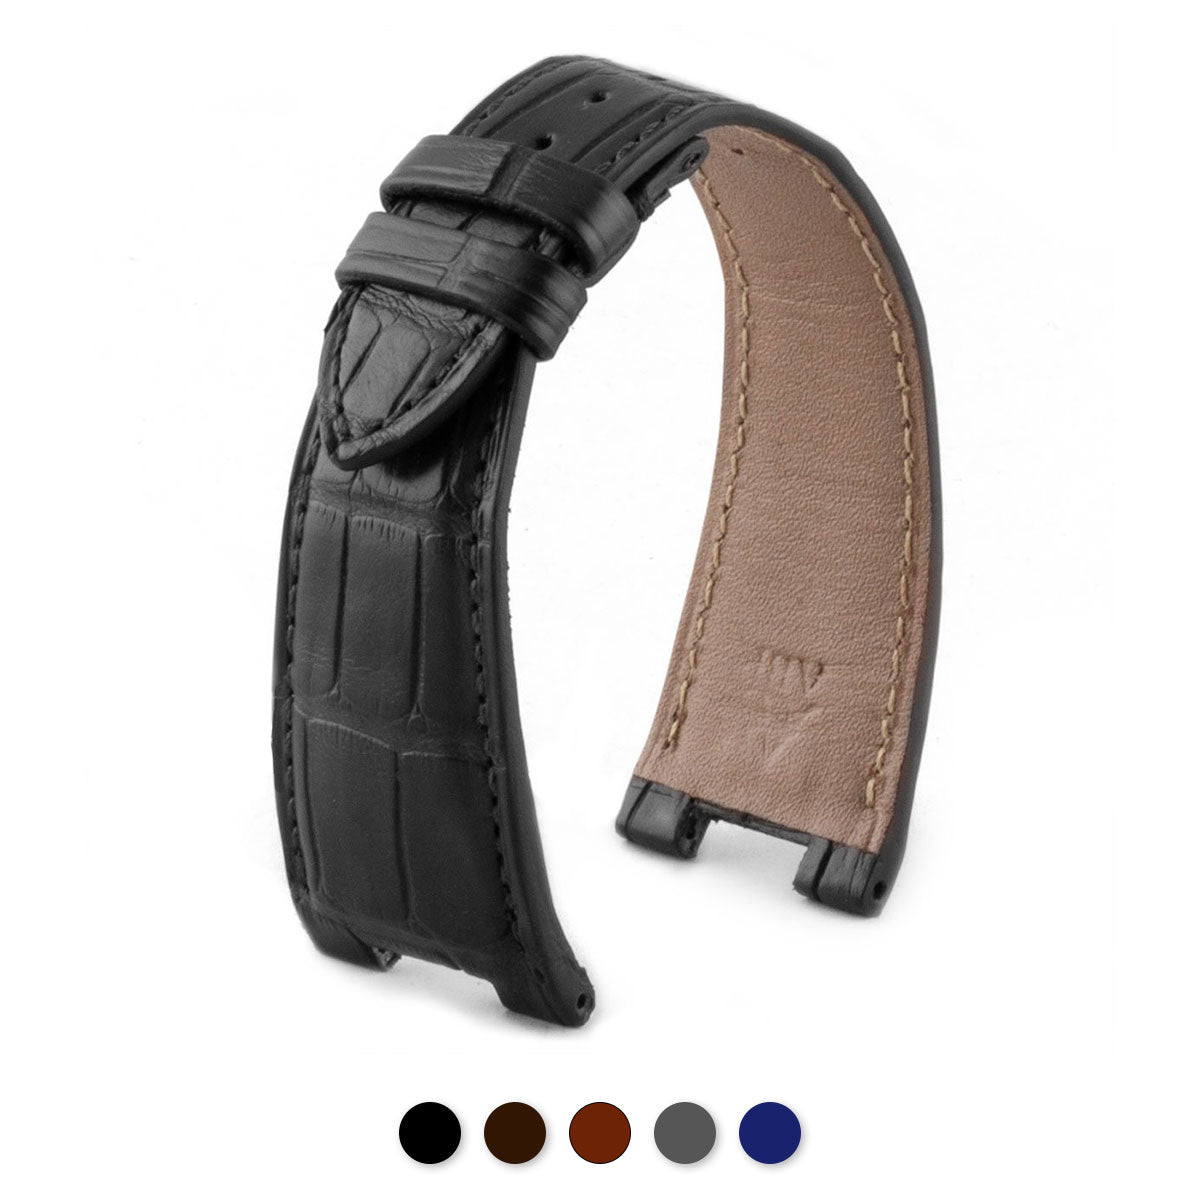 Patek Philippe Nautilus - Bracelet-montre cuir - Alligator (noir / gris / marron / bleu...) - watch band leather strap - ABP Concept -